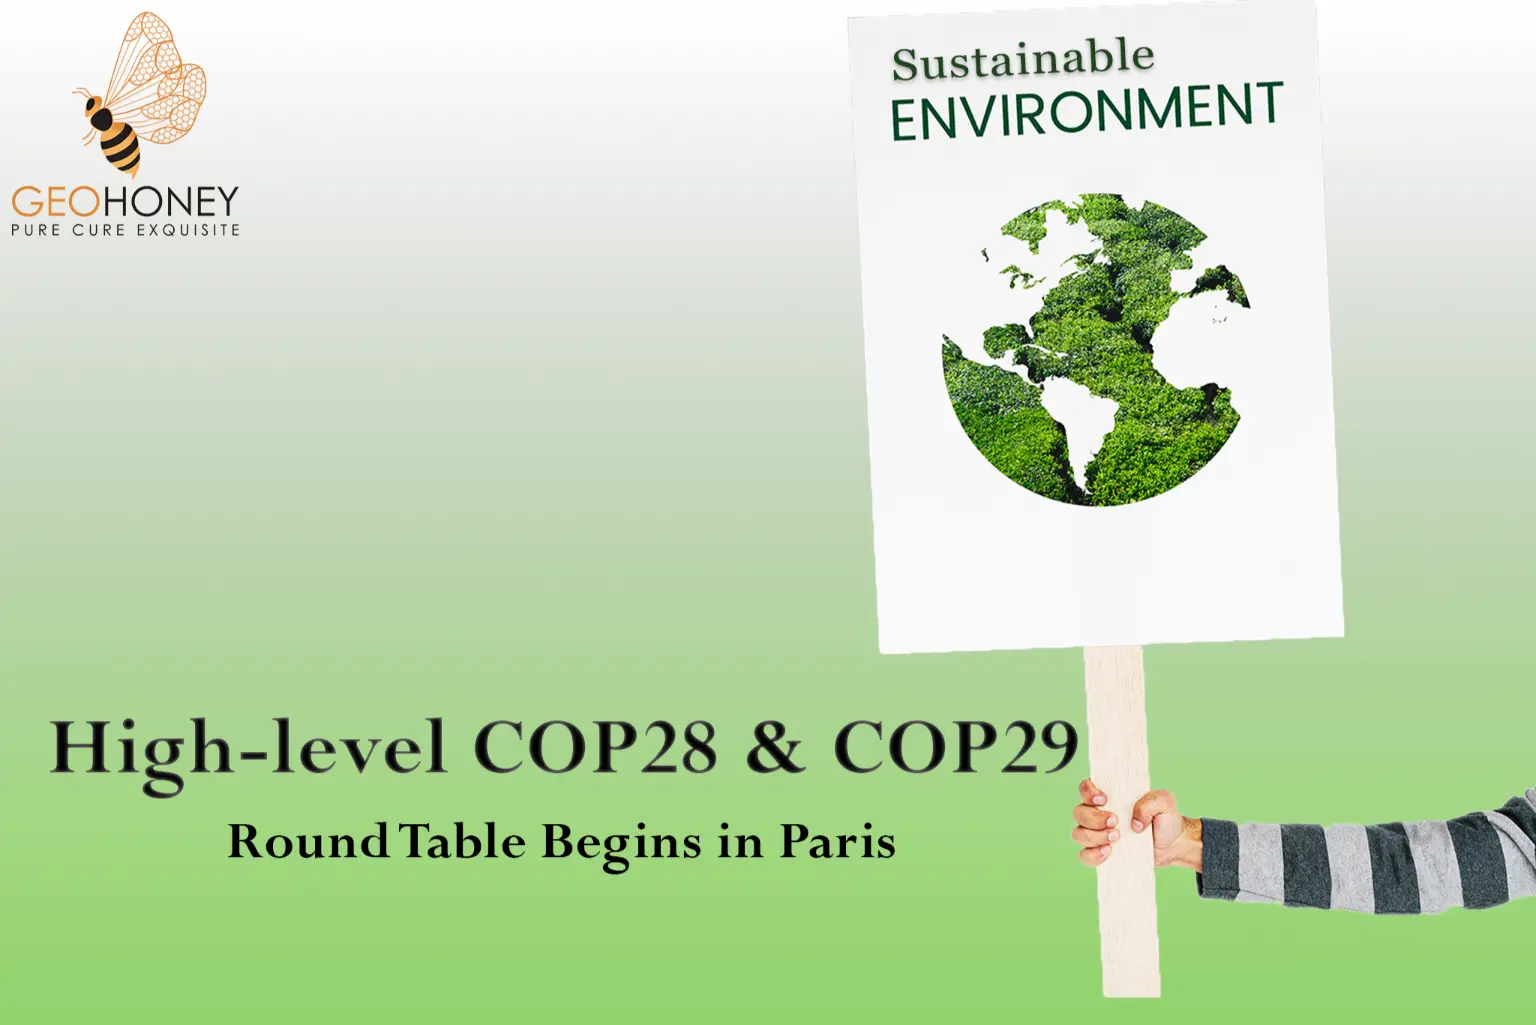 انطلاق المائدة المستديرة رفيعة المستوى بشأن COP28 وCOP29 في باريس